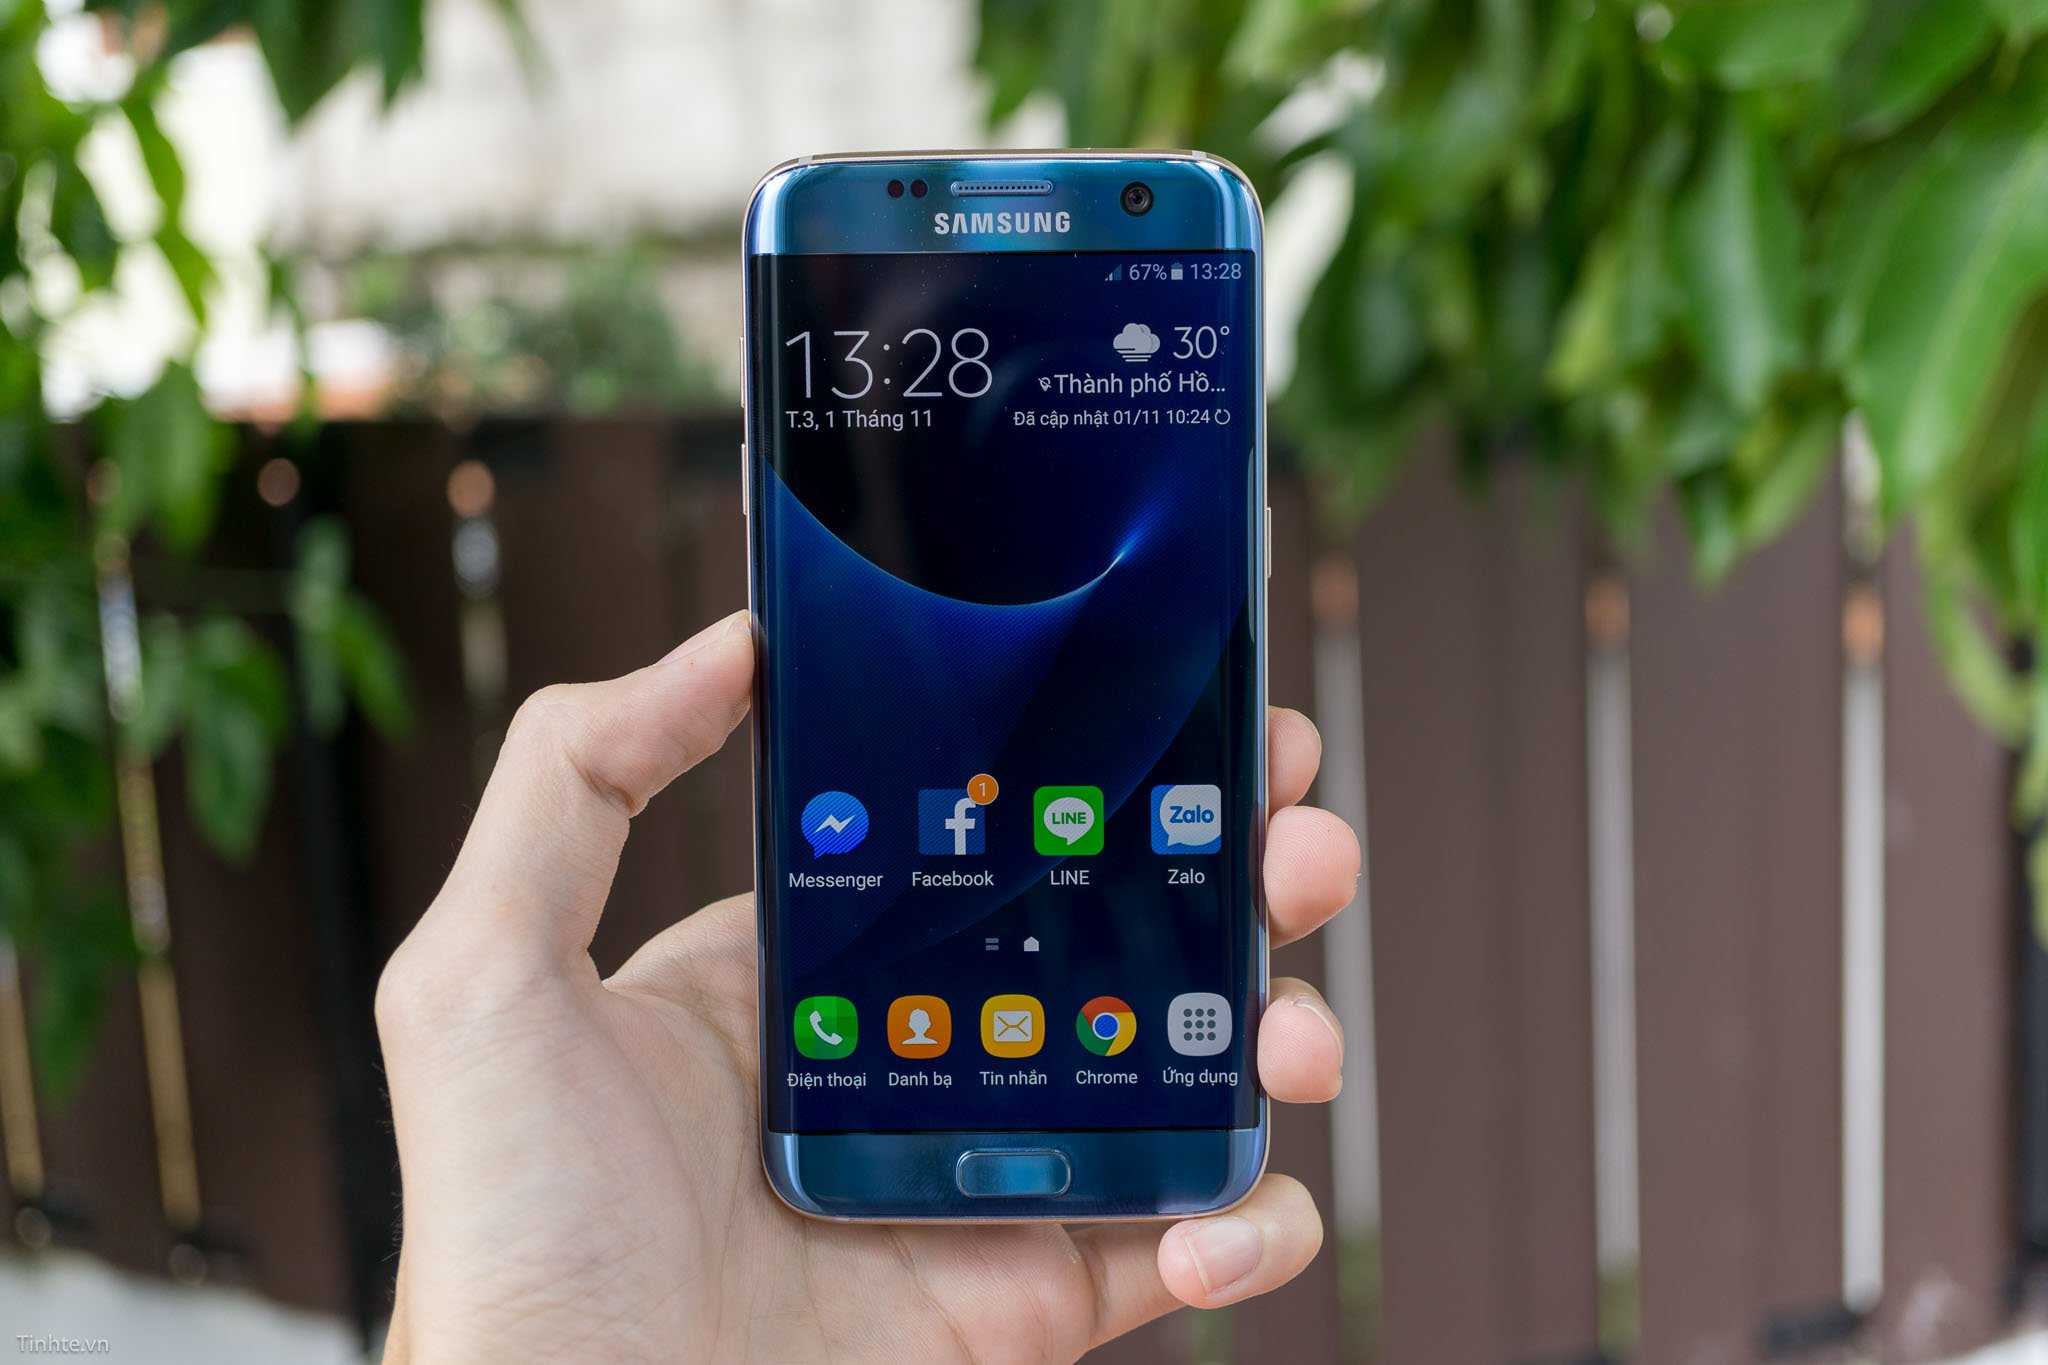 Samsung galaxy 7 купить. Samsung Galaxy s7 Edge Blue. Samsung Galaxy 7 Edge. Samsung Galaxy s7 Edge 32gb. Samsung s7 Edge narxi.